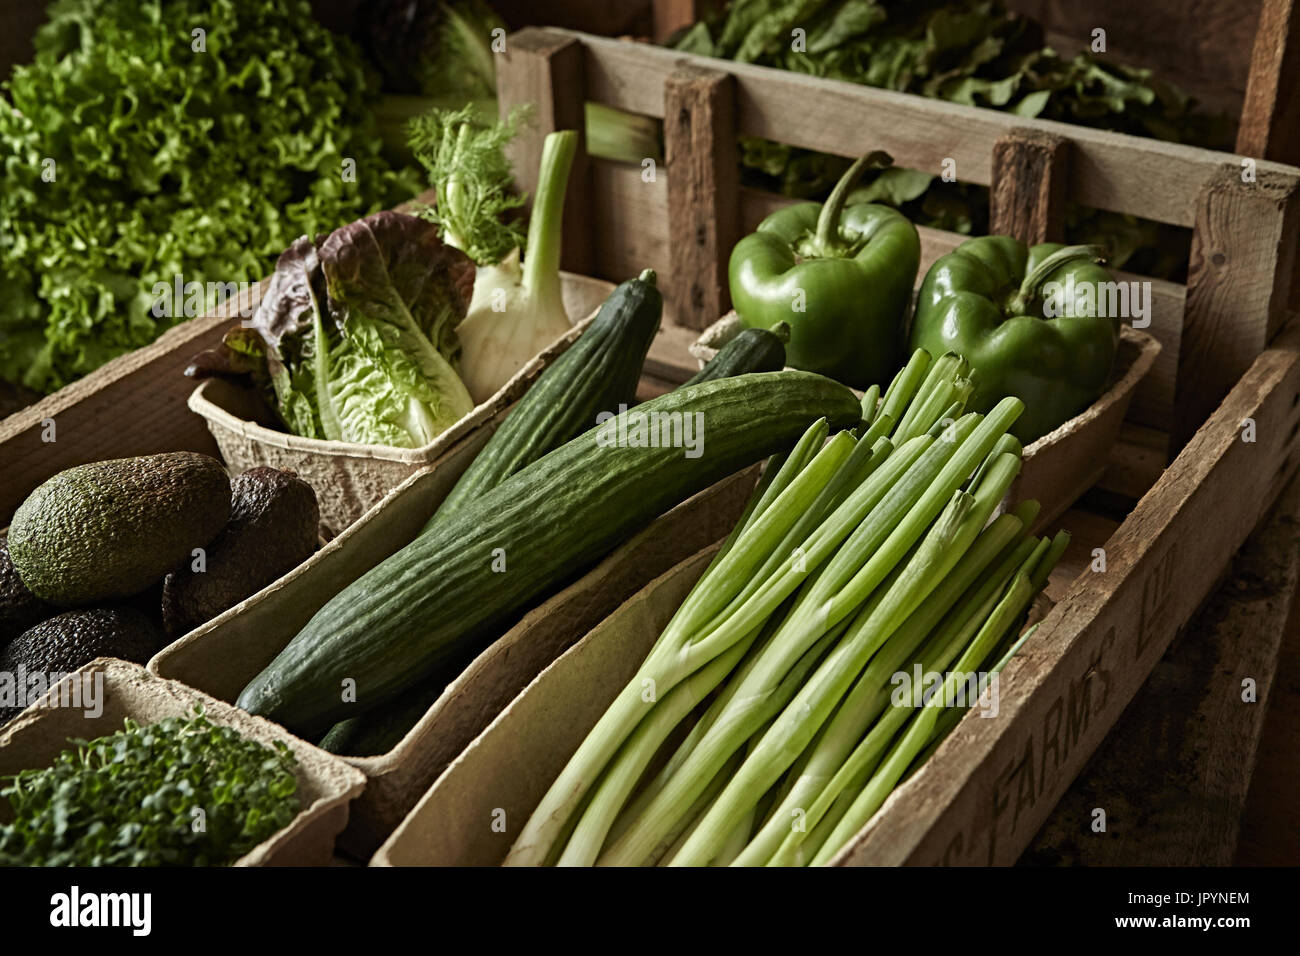 La vie toujours frais, sains, biologiques, la récolte de légumes vert variété En caisse bois Banque D'Images